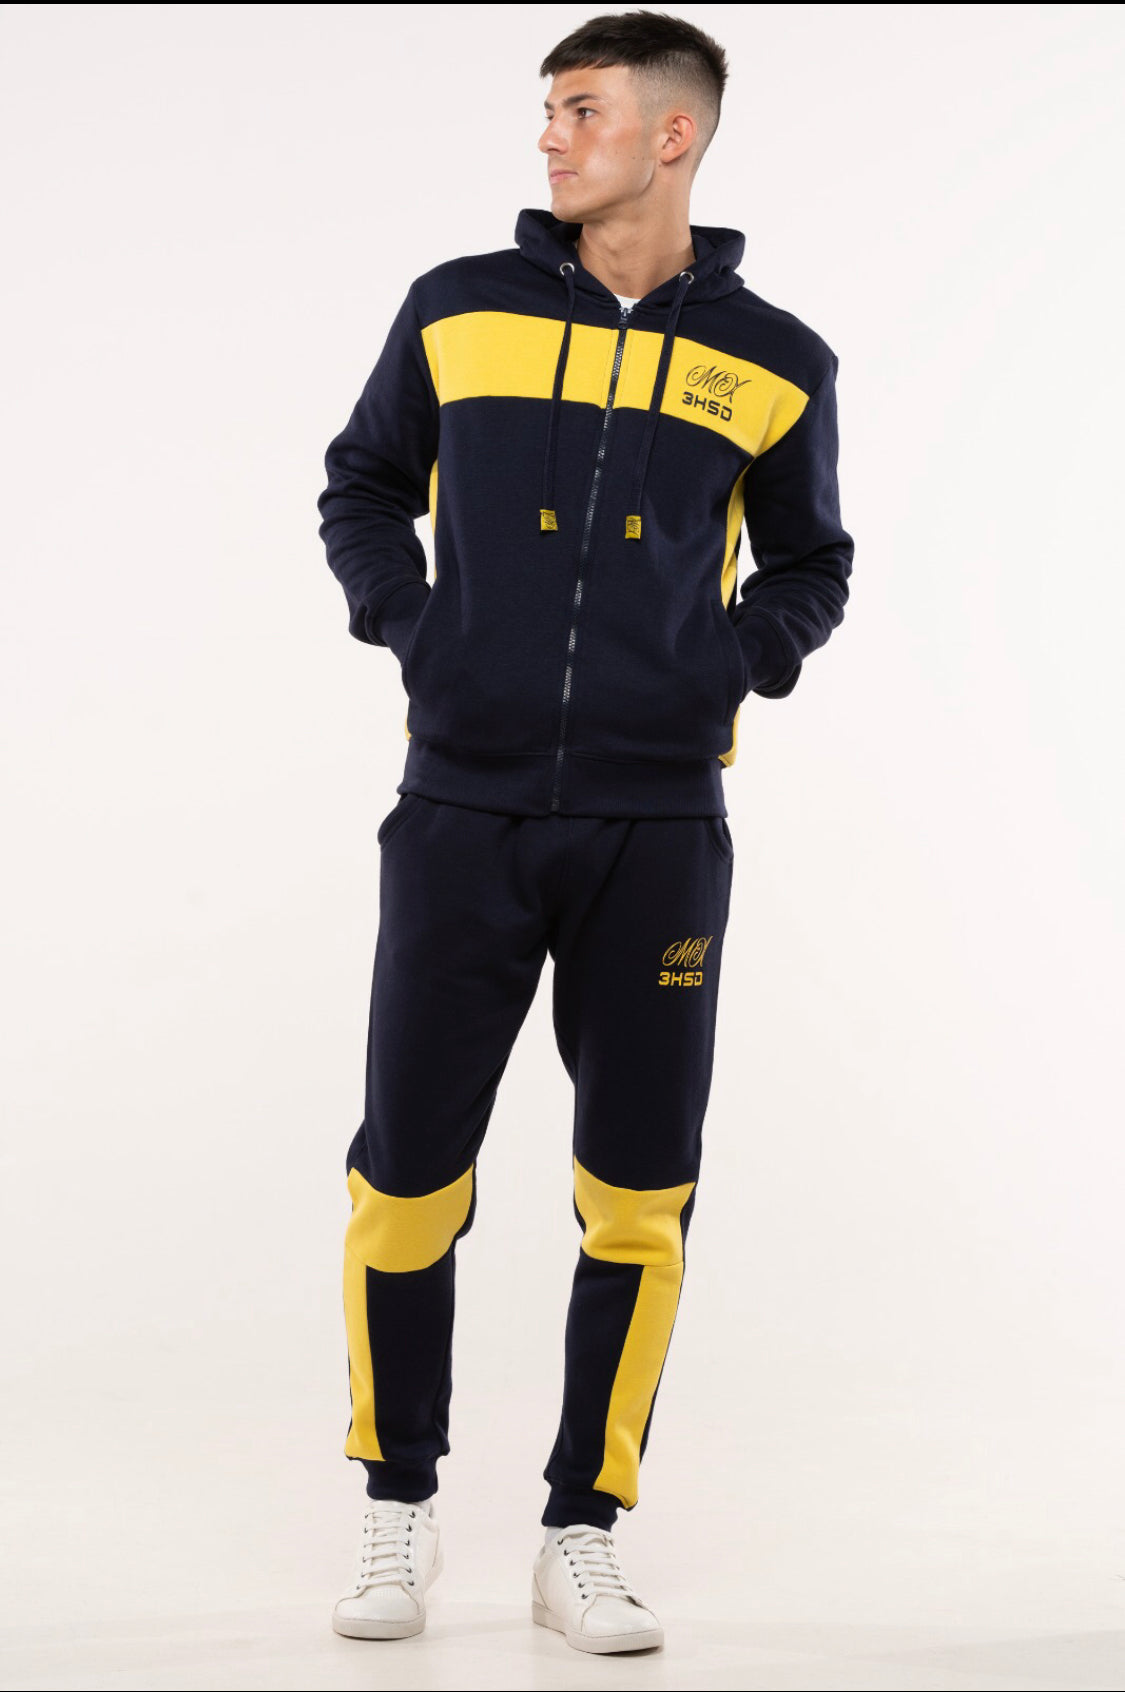 Titan MX 3HSD Navy/yellow 2 piece jogging suit